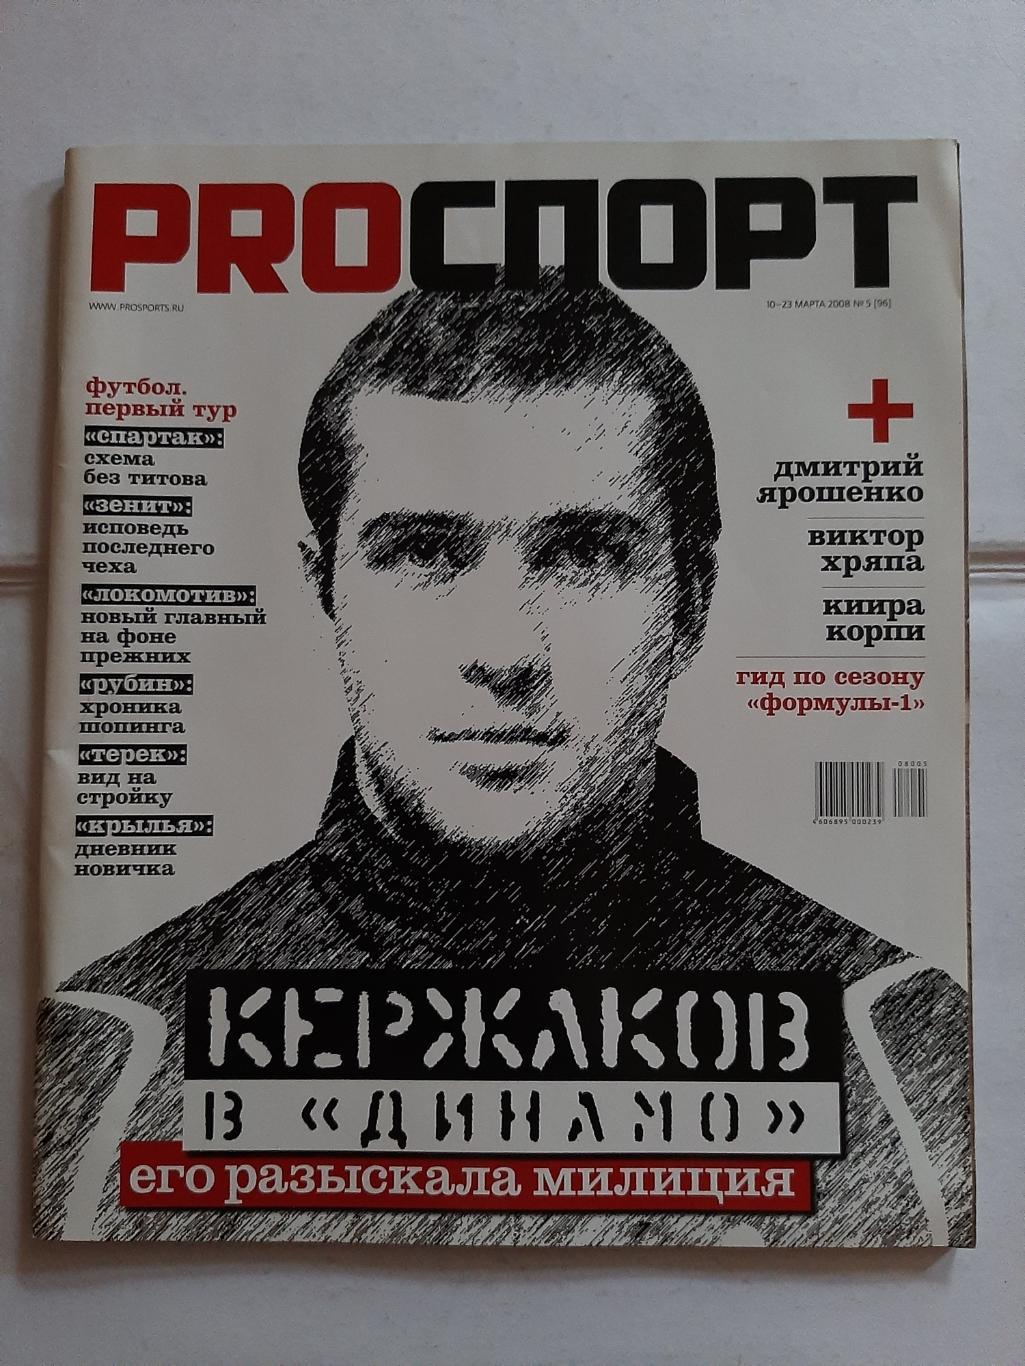 Журнал ProСпорт №5 2008